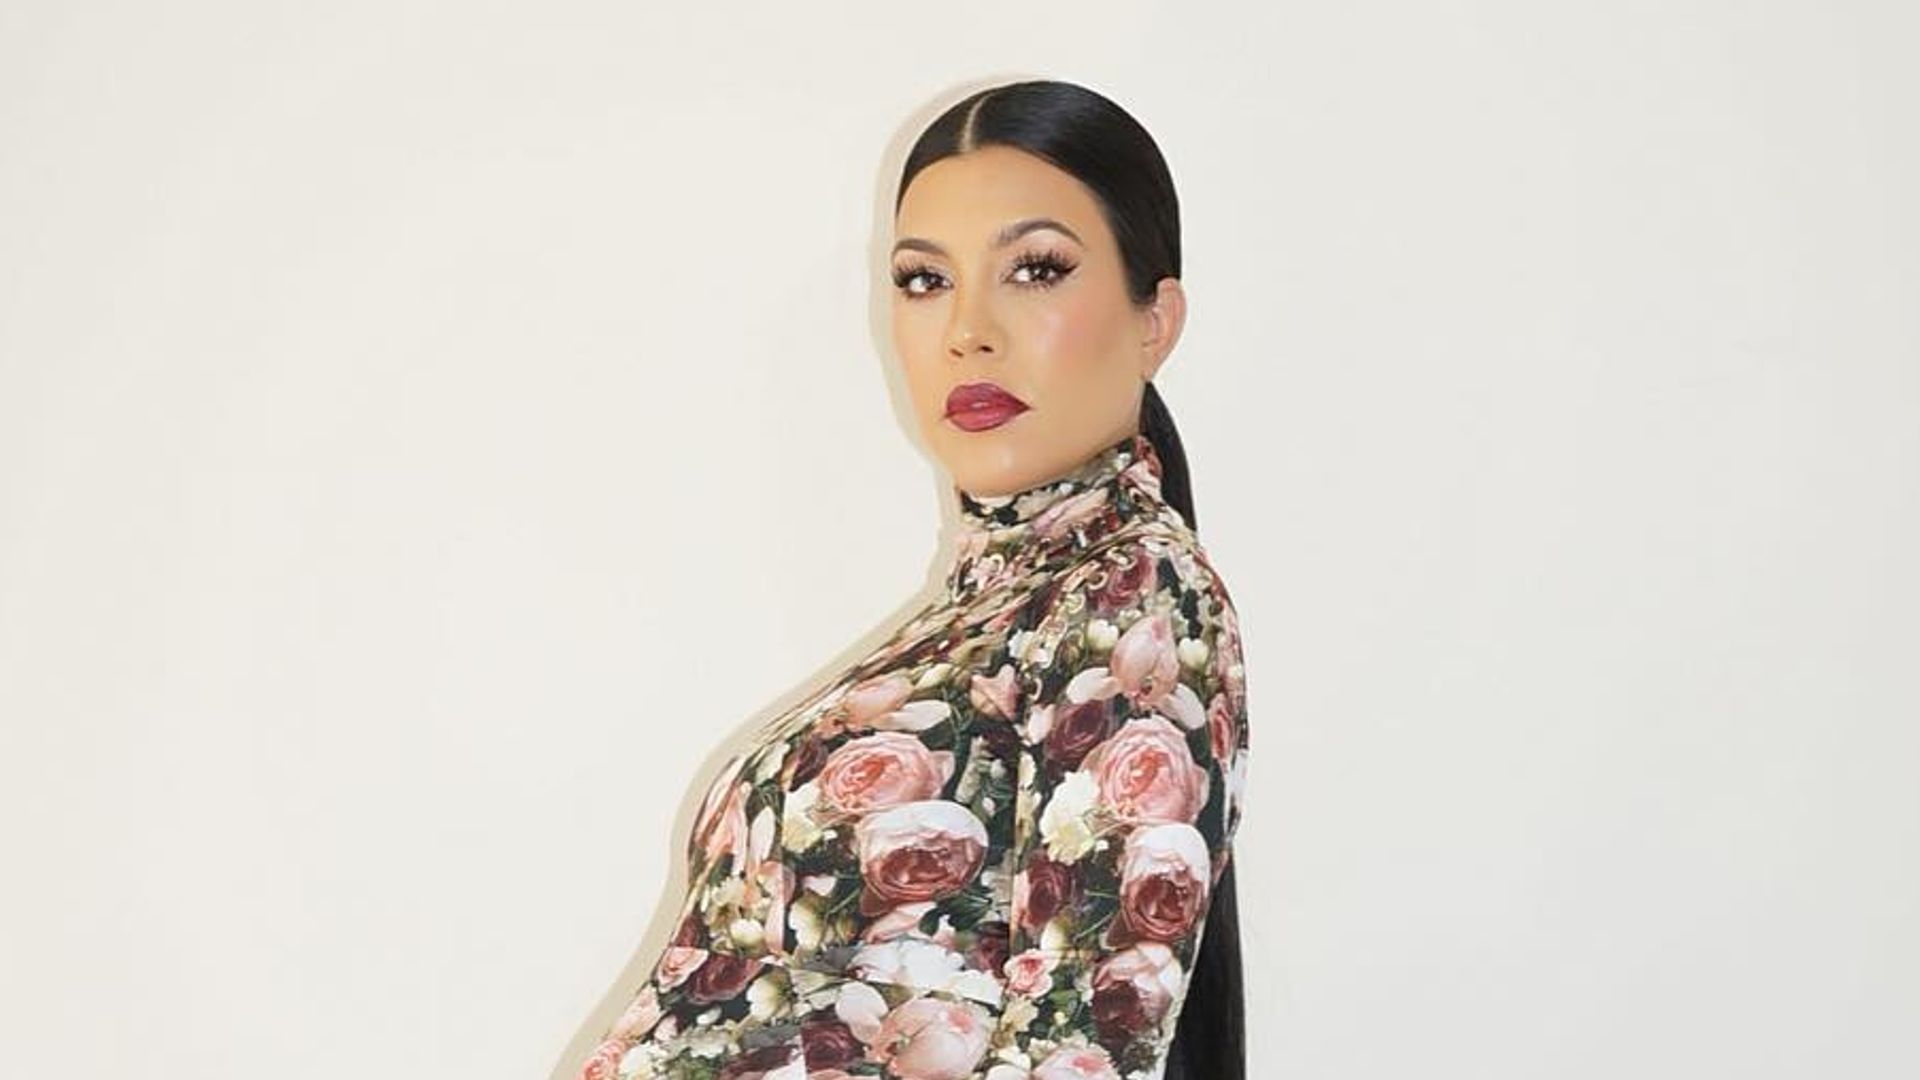 Kourtney Kardashian wears a floral dress while heavily pregnant